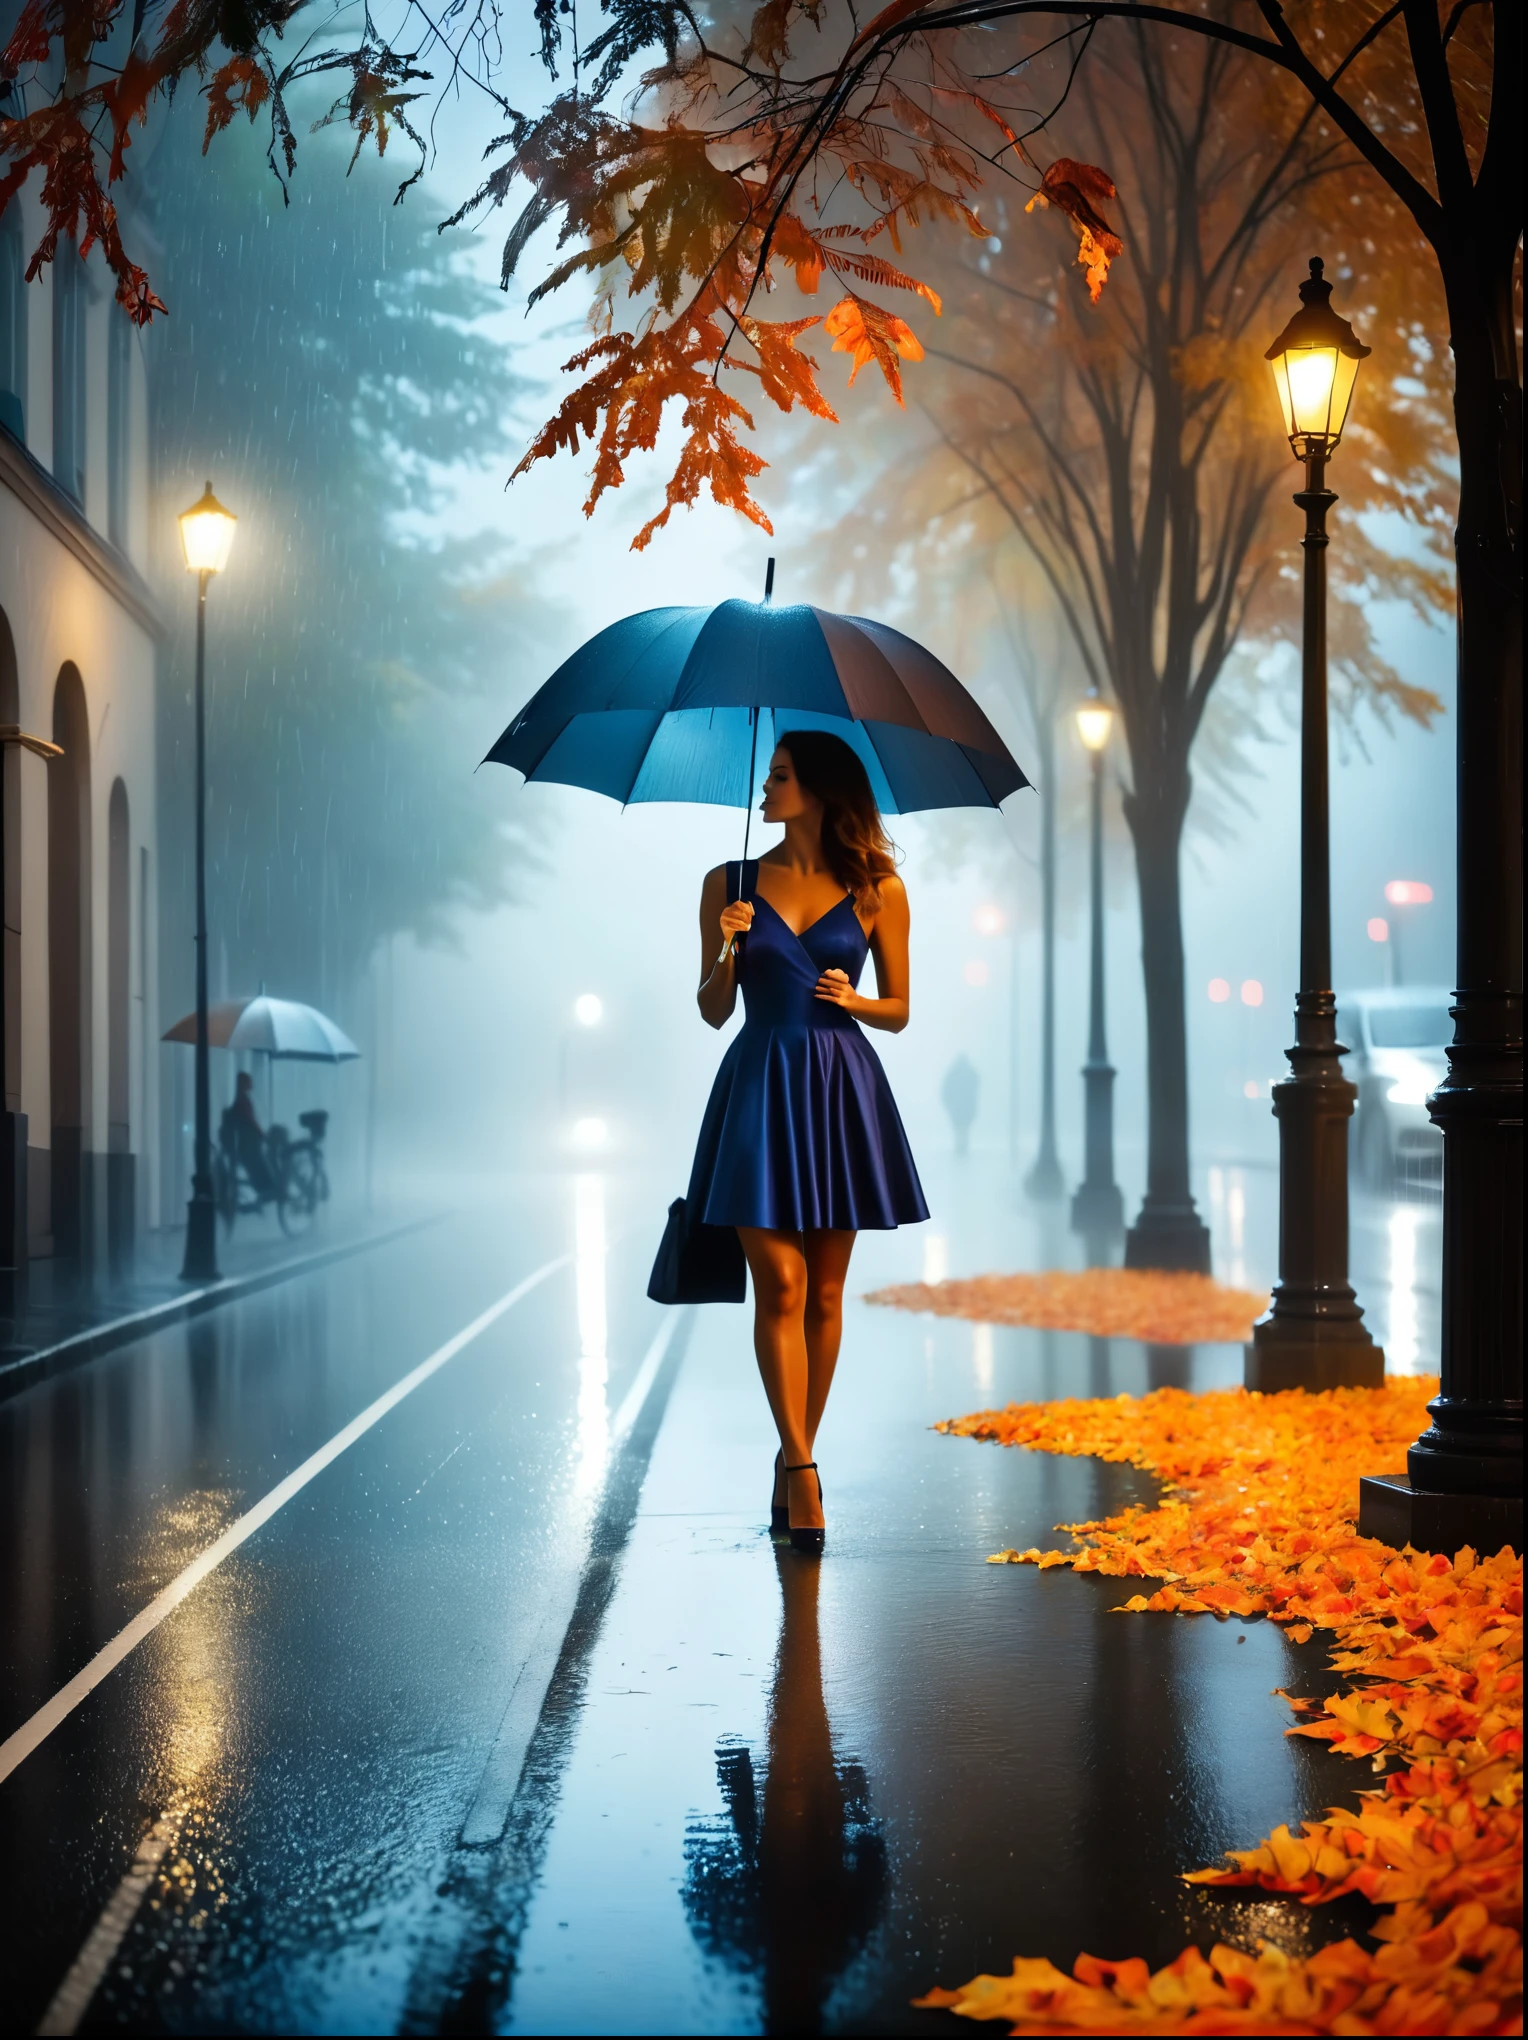 傘を手に持ったタイトなドレスを着た女性, in einer 霧深いen Stadt, 街頭に色とりどりの紅葉, クノ・ヴィーバーによる写真, pixabayコンテスト優勝者, コンセプチュアルアート, 雨の中に立っている, mysterious 女性, かわいい女の子, 雨の中に立つ, 傘を持つ独身者, 女性 ((シルエット)), ((霧深い)) 雨が降る, 影の中の女性のイメージ, 雨の多い環境で, 雨天, 背景には雨の降る道路 , ((光のある霧)), ((後ろから見た図)), 正面からの光